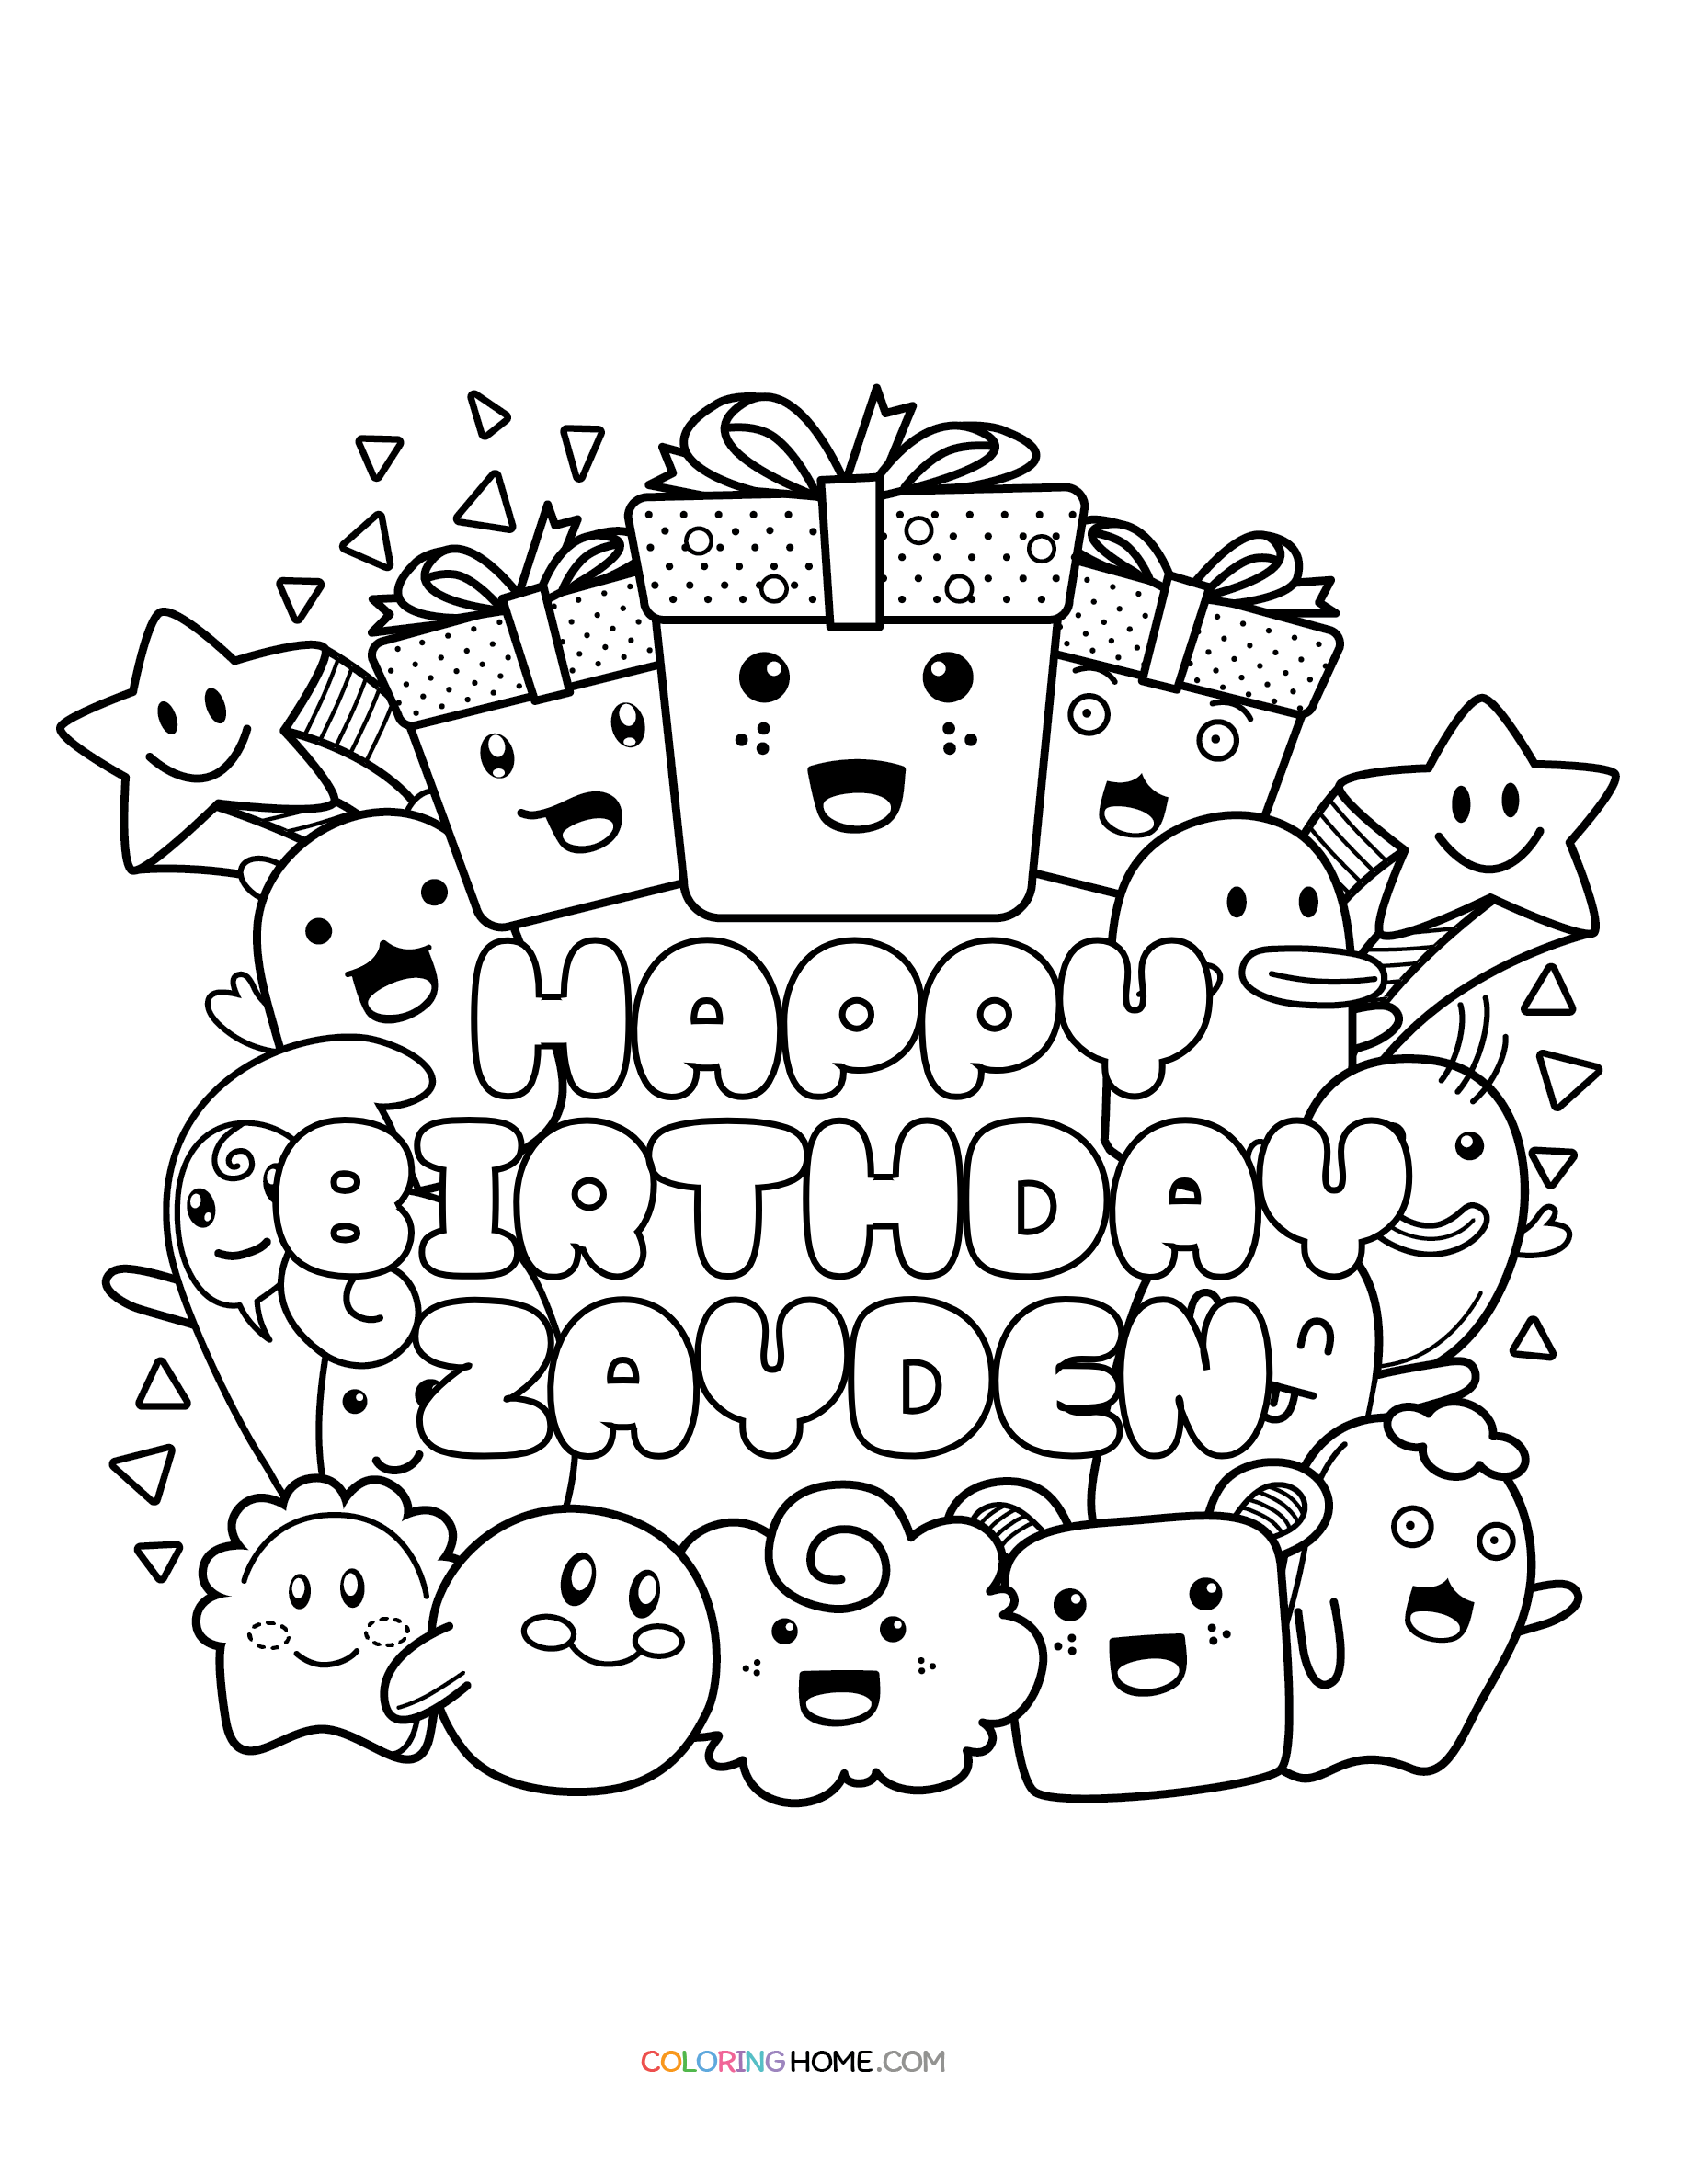 Happy Birthday Zayden coloring page